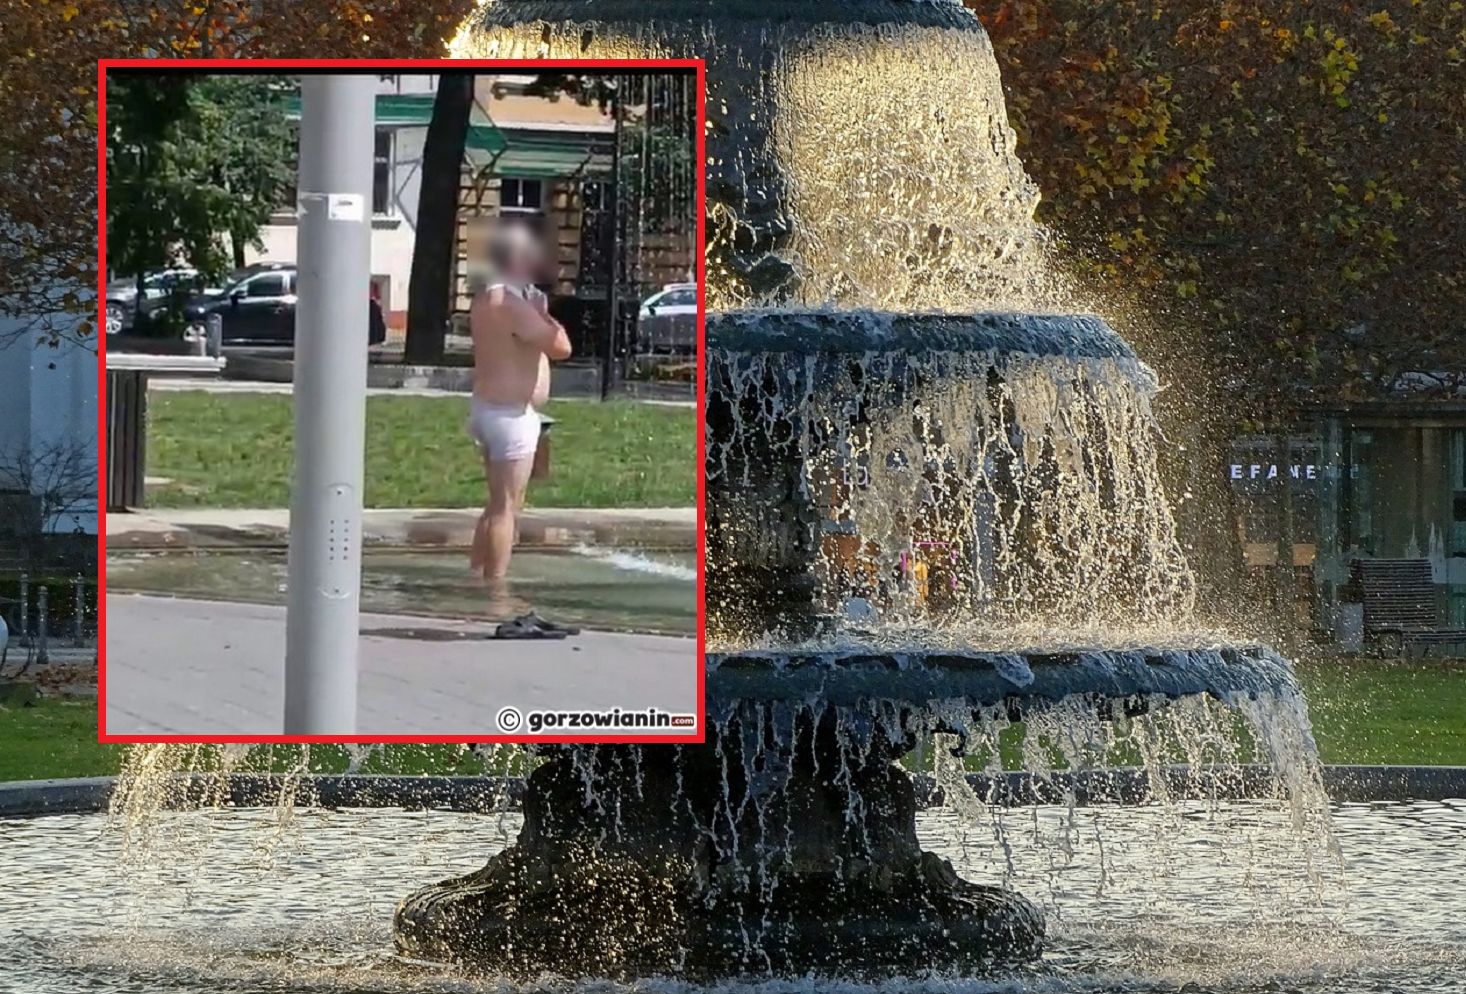 Nietypowy widok w Gorzowie. Mężczyzna kąpie się w fontannie